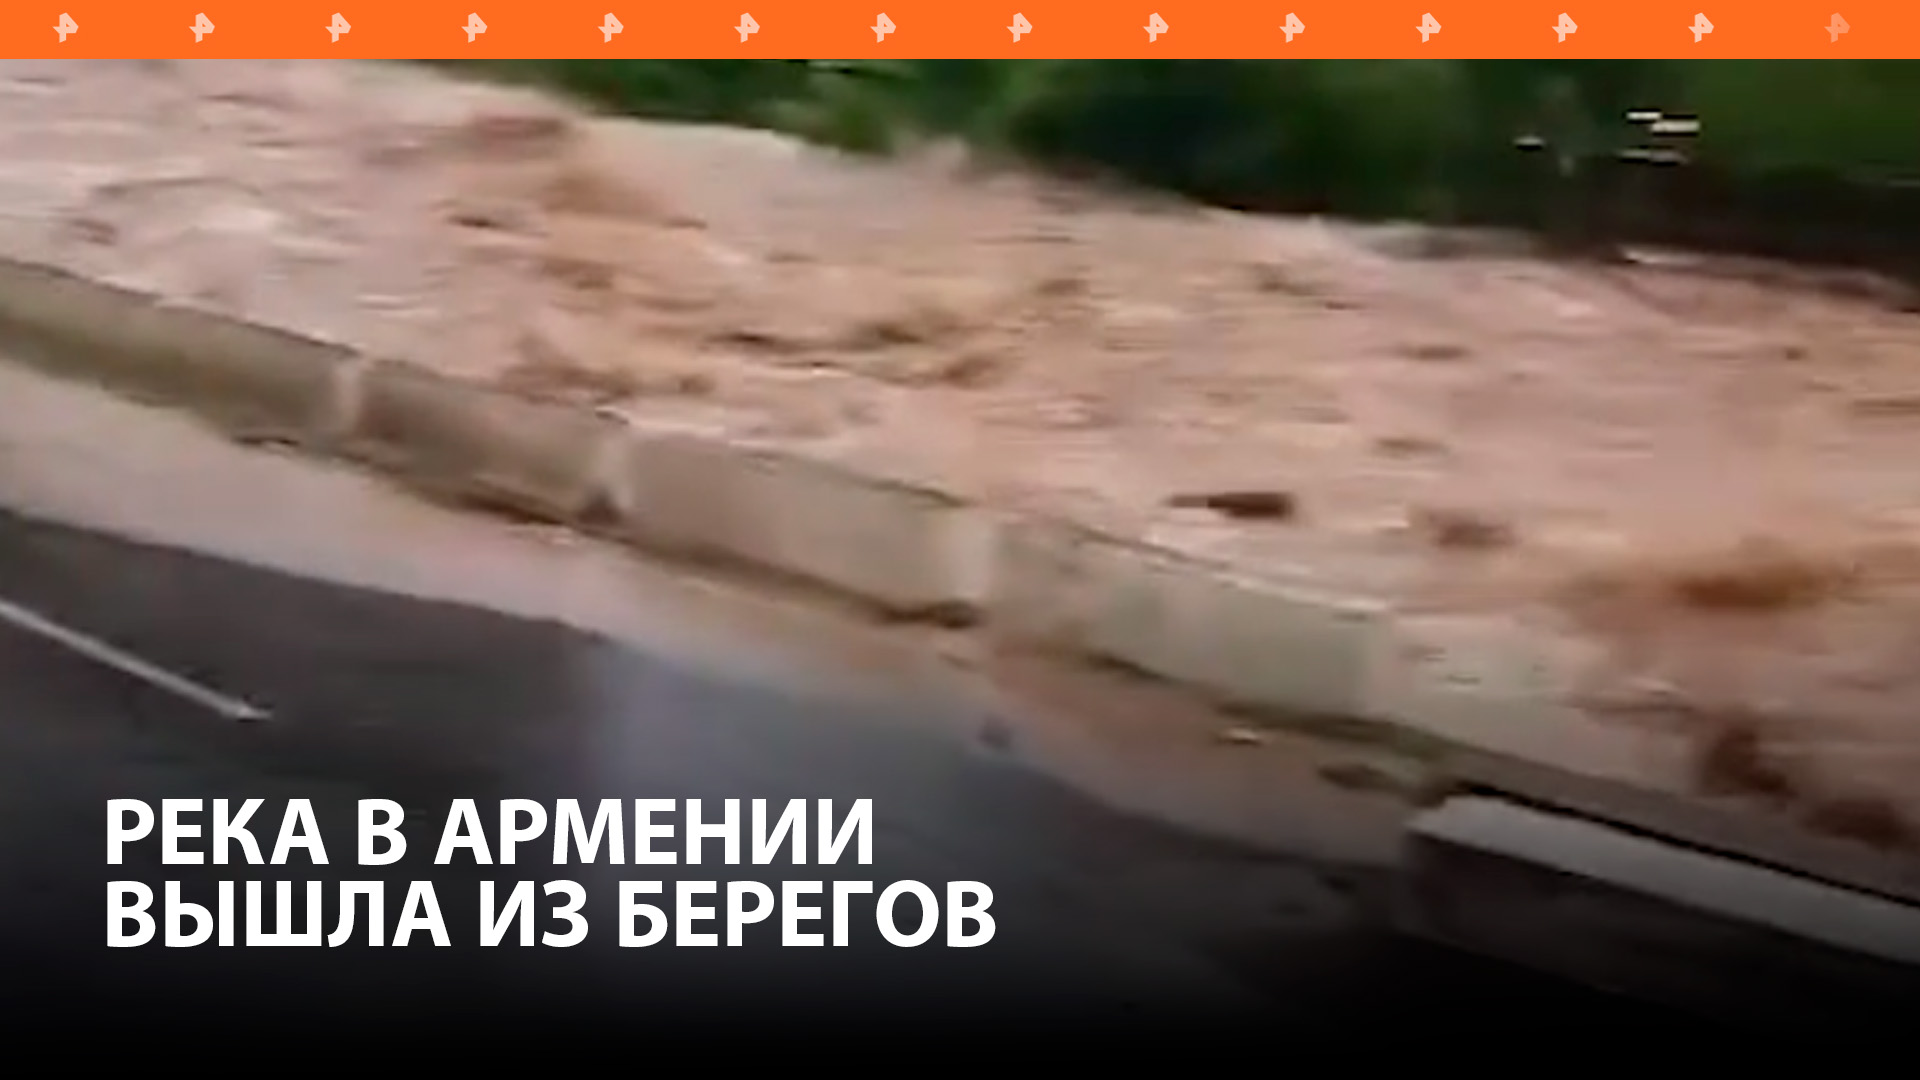 Трасса М-6 между Арменией и Грузией закрыта из-за выхода реки Дебед из берегов / РЕН Новости